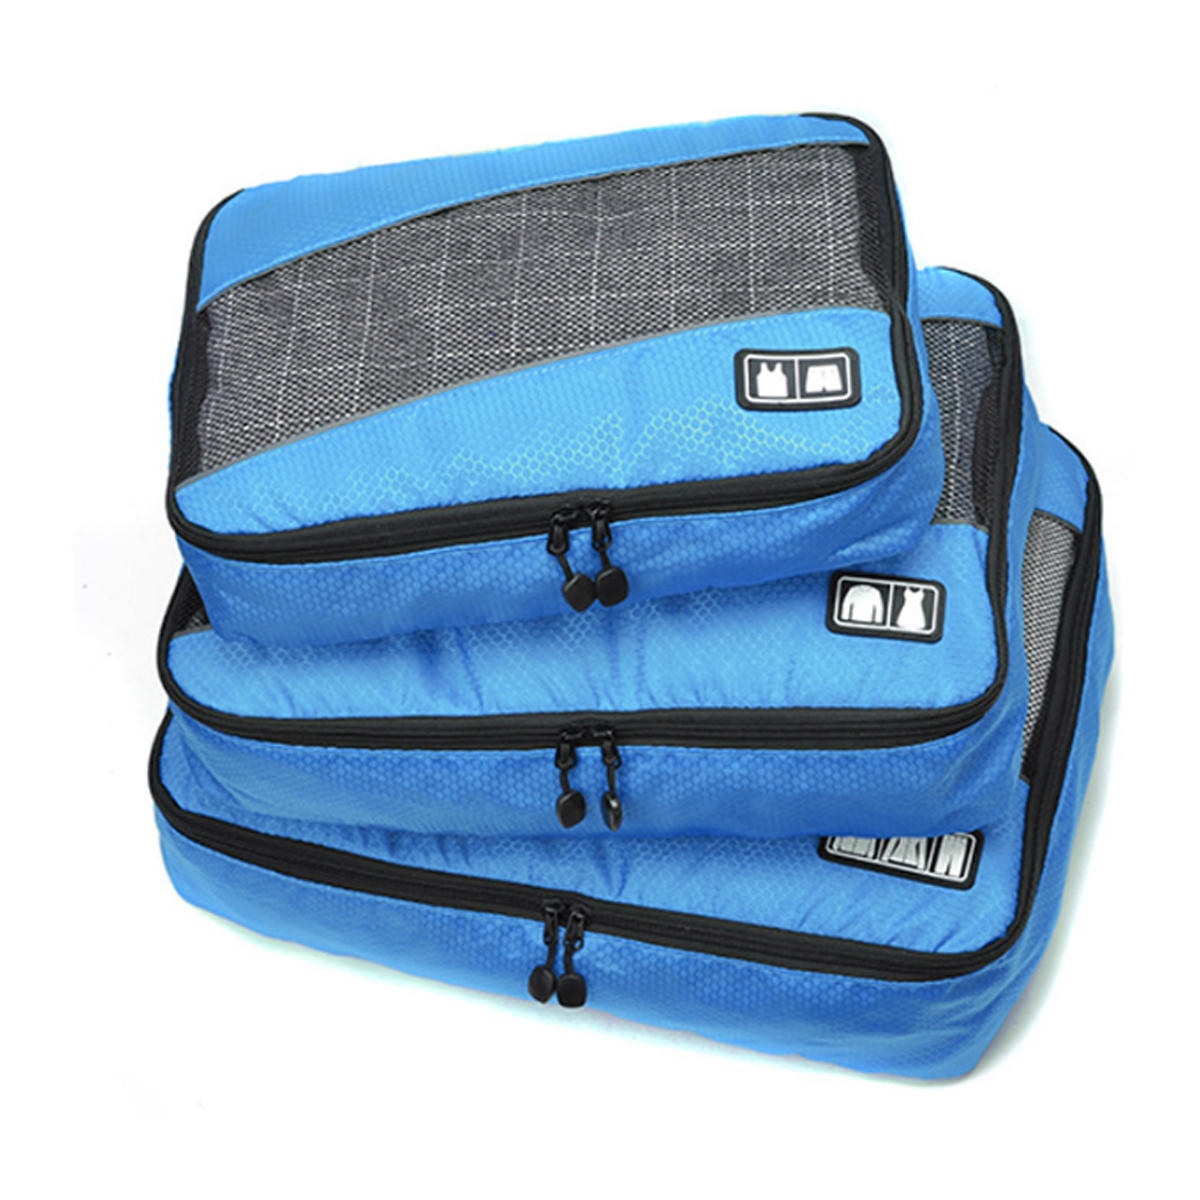 Bolsa de almacenamiento impermeable para ropa interior, ropa y artículos de tocador durante el viaje (3 piezas)